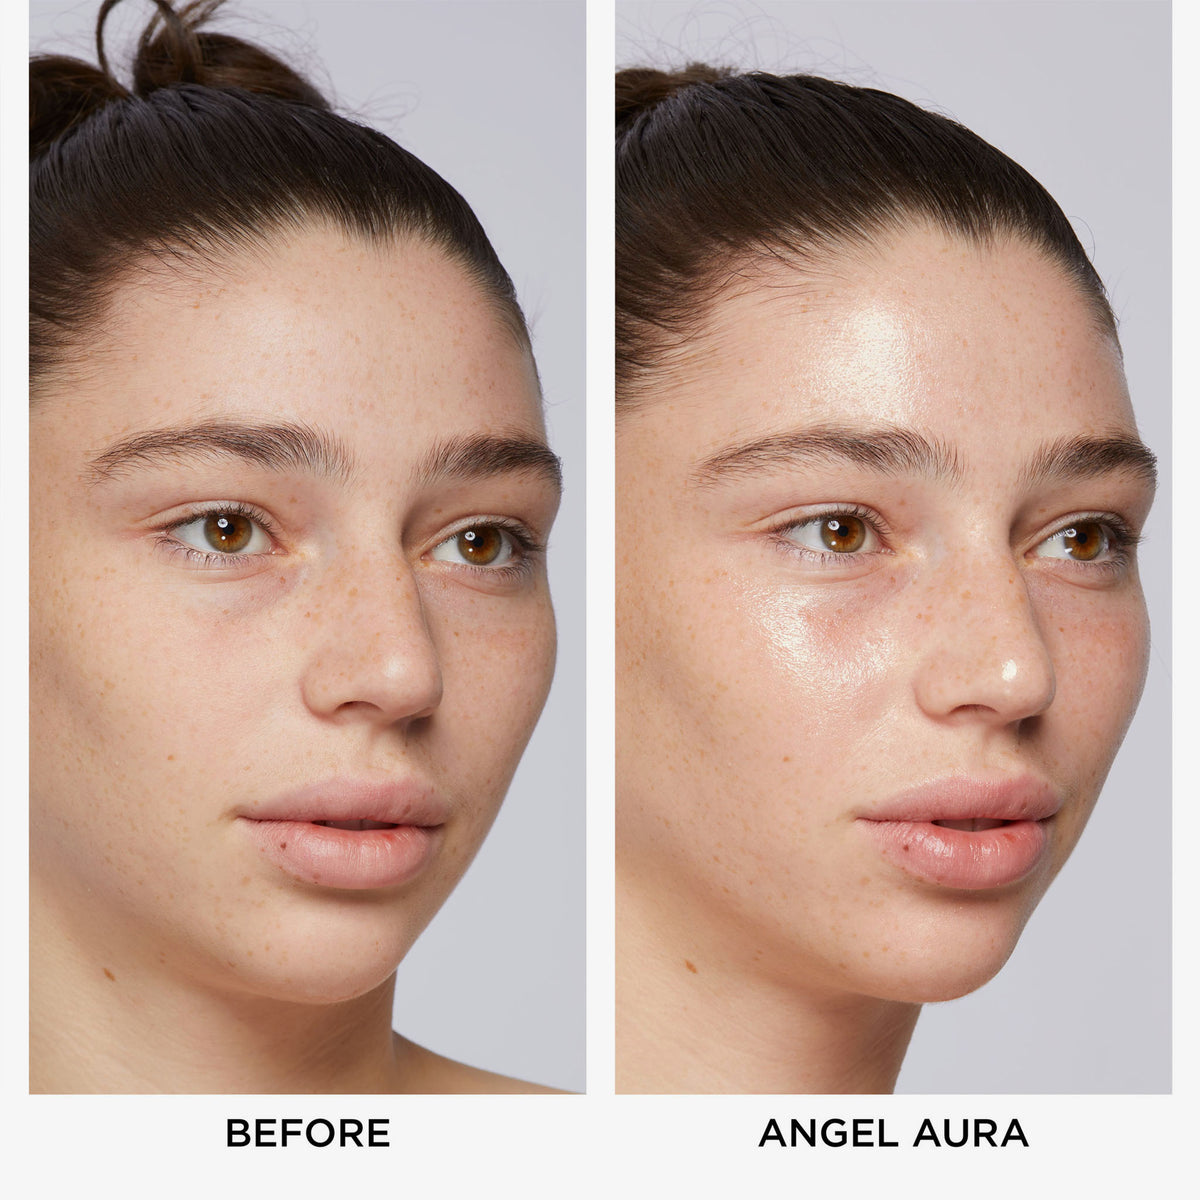 Vorher/Nachher Vergleich eines Gesichts mit NABLA Cosmetics Angel Aura.